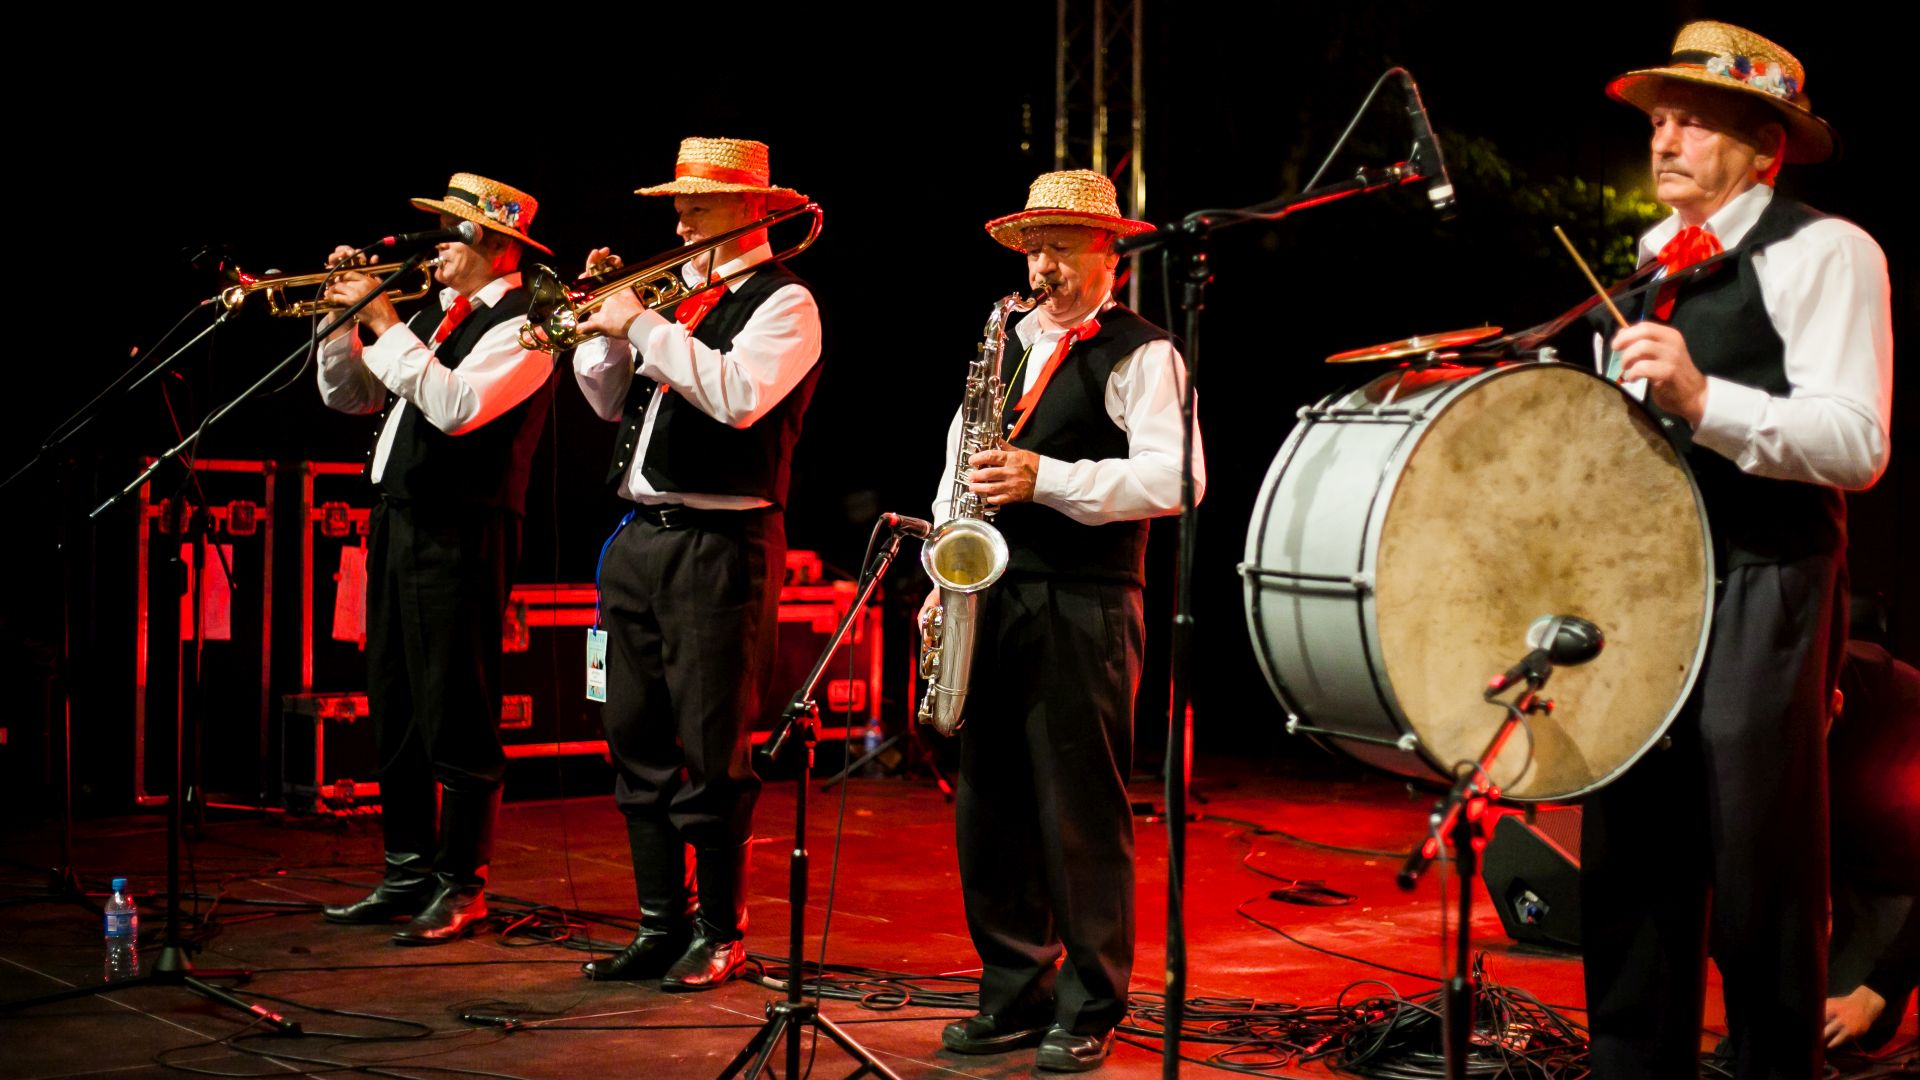 Grupa czterech mężczyzn ubranych w stroje ludowe, grających na instrumentach na scenie.